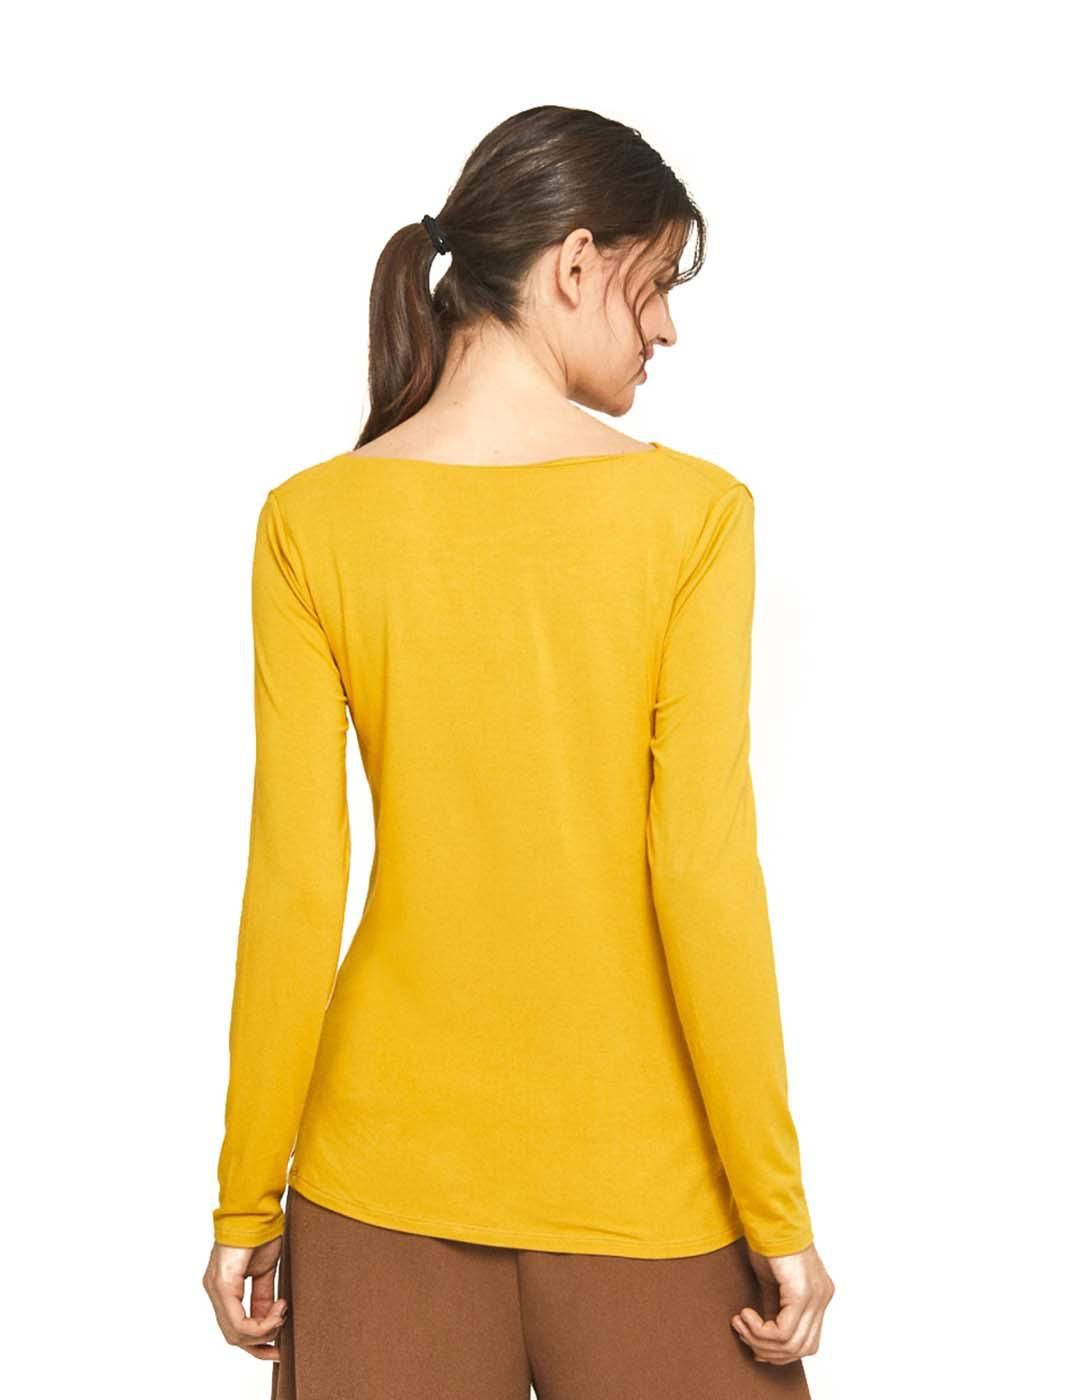 Camiseta SURKANA Essential Amarillo - Bicos de Fío